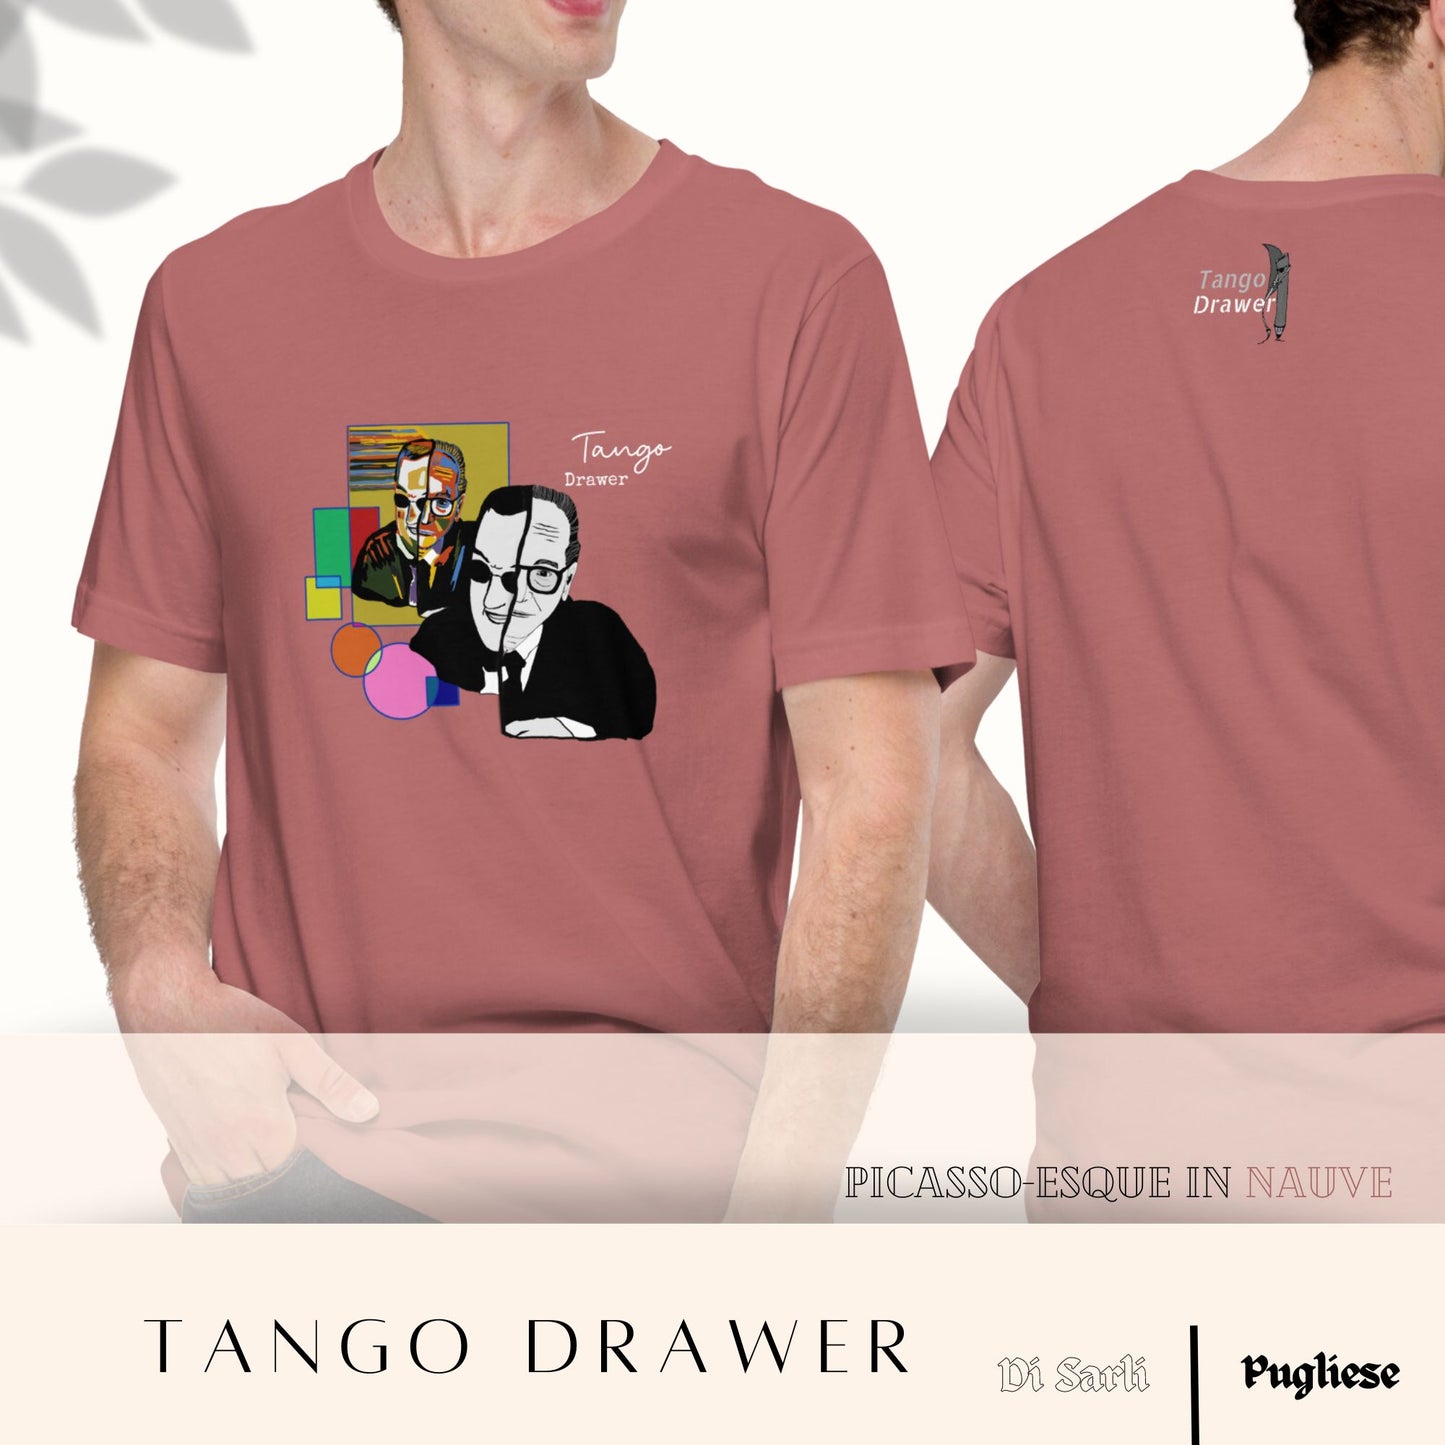 Picasso-esque Unisex Tango Tshirt